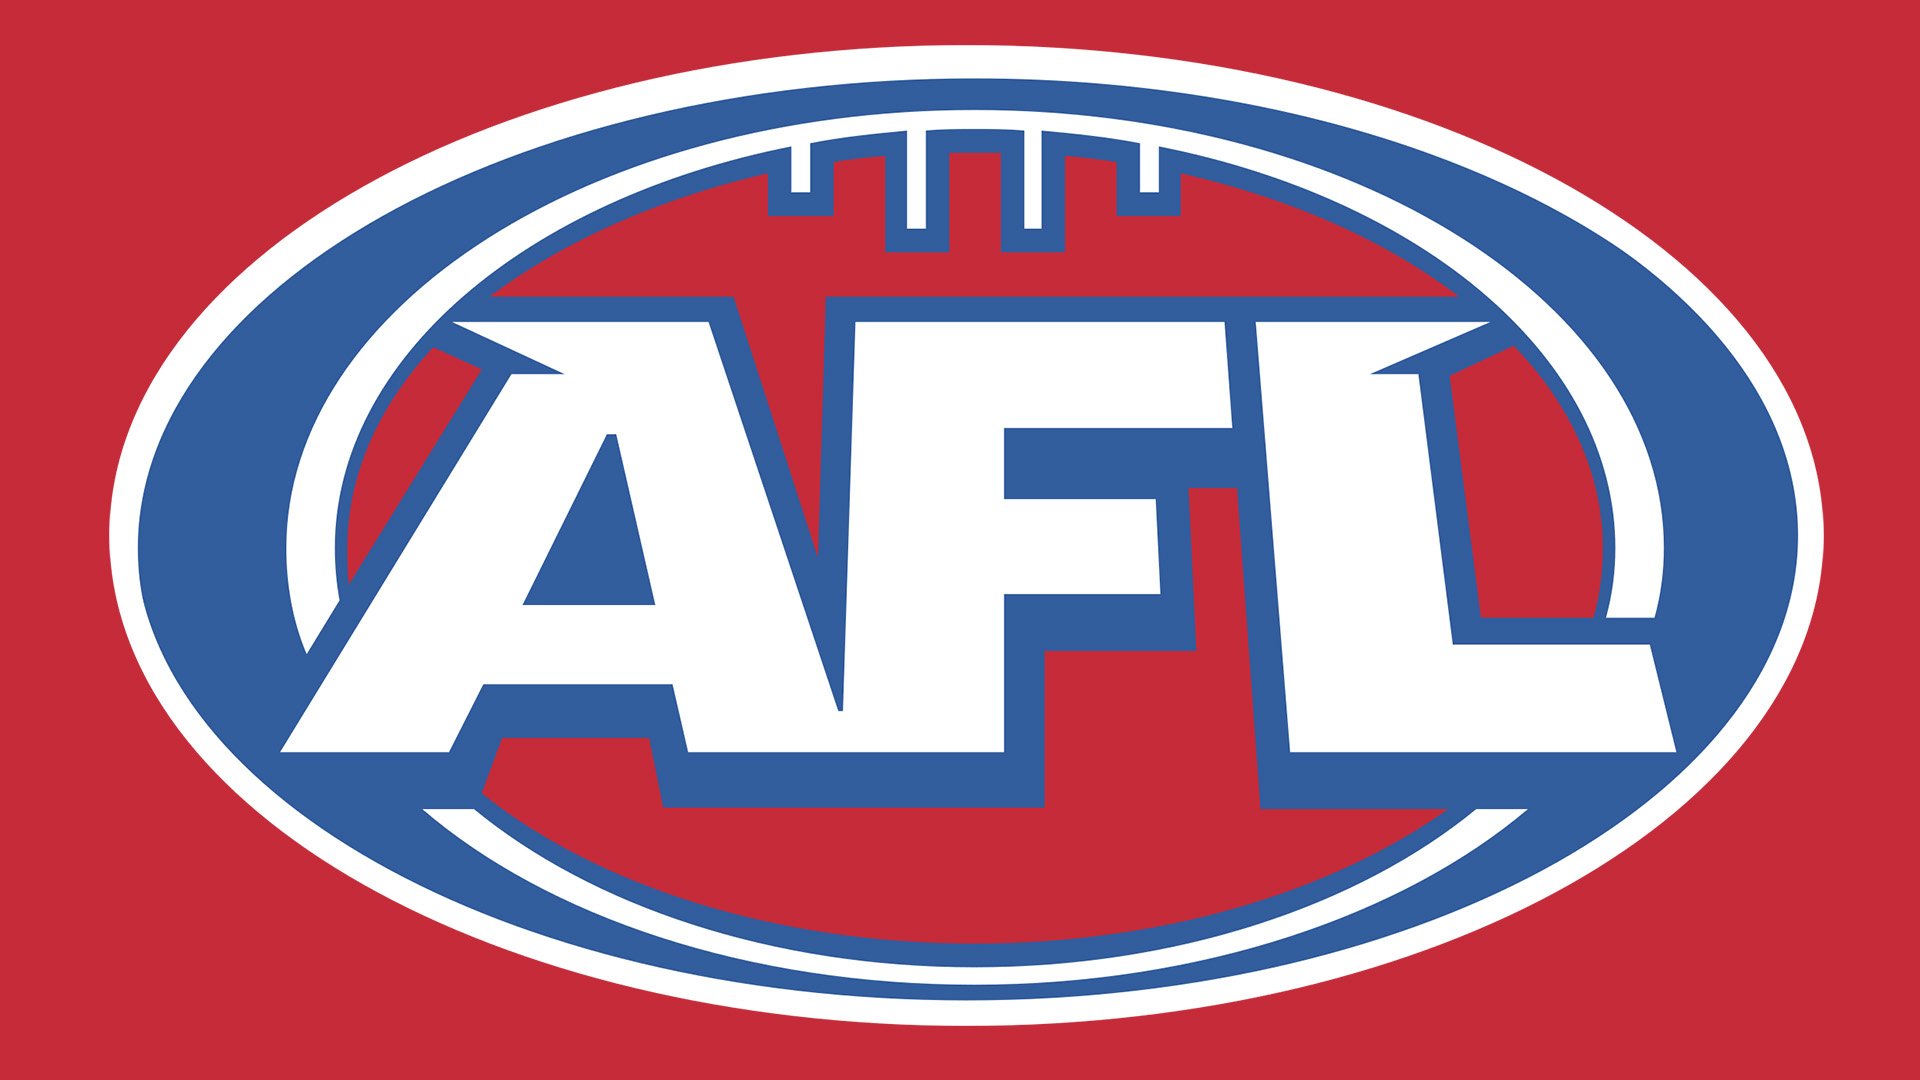 AFL logo on red background